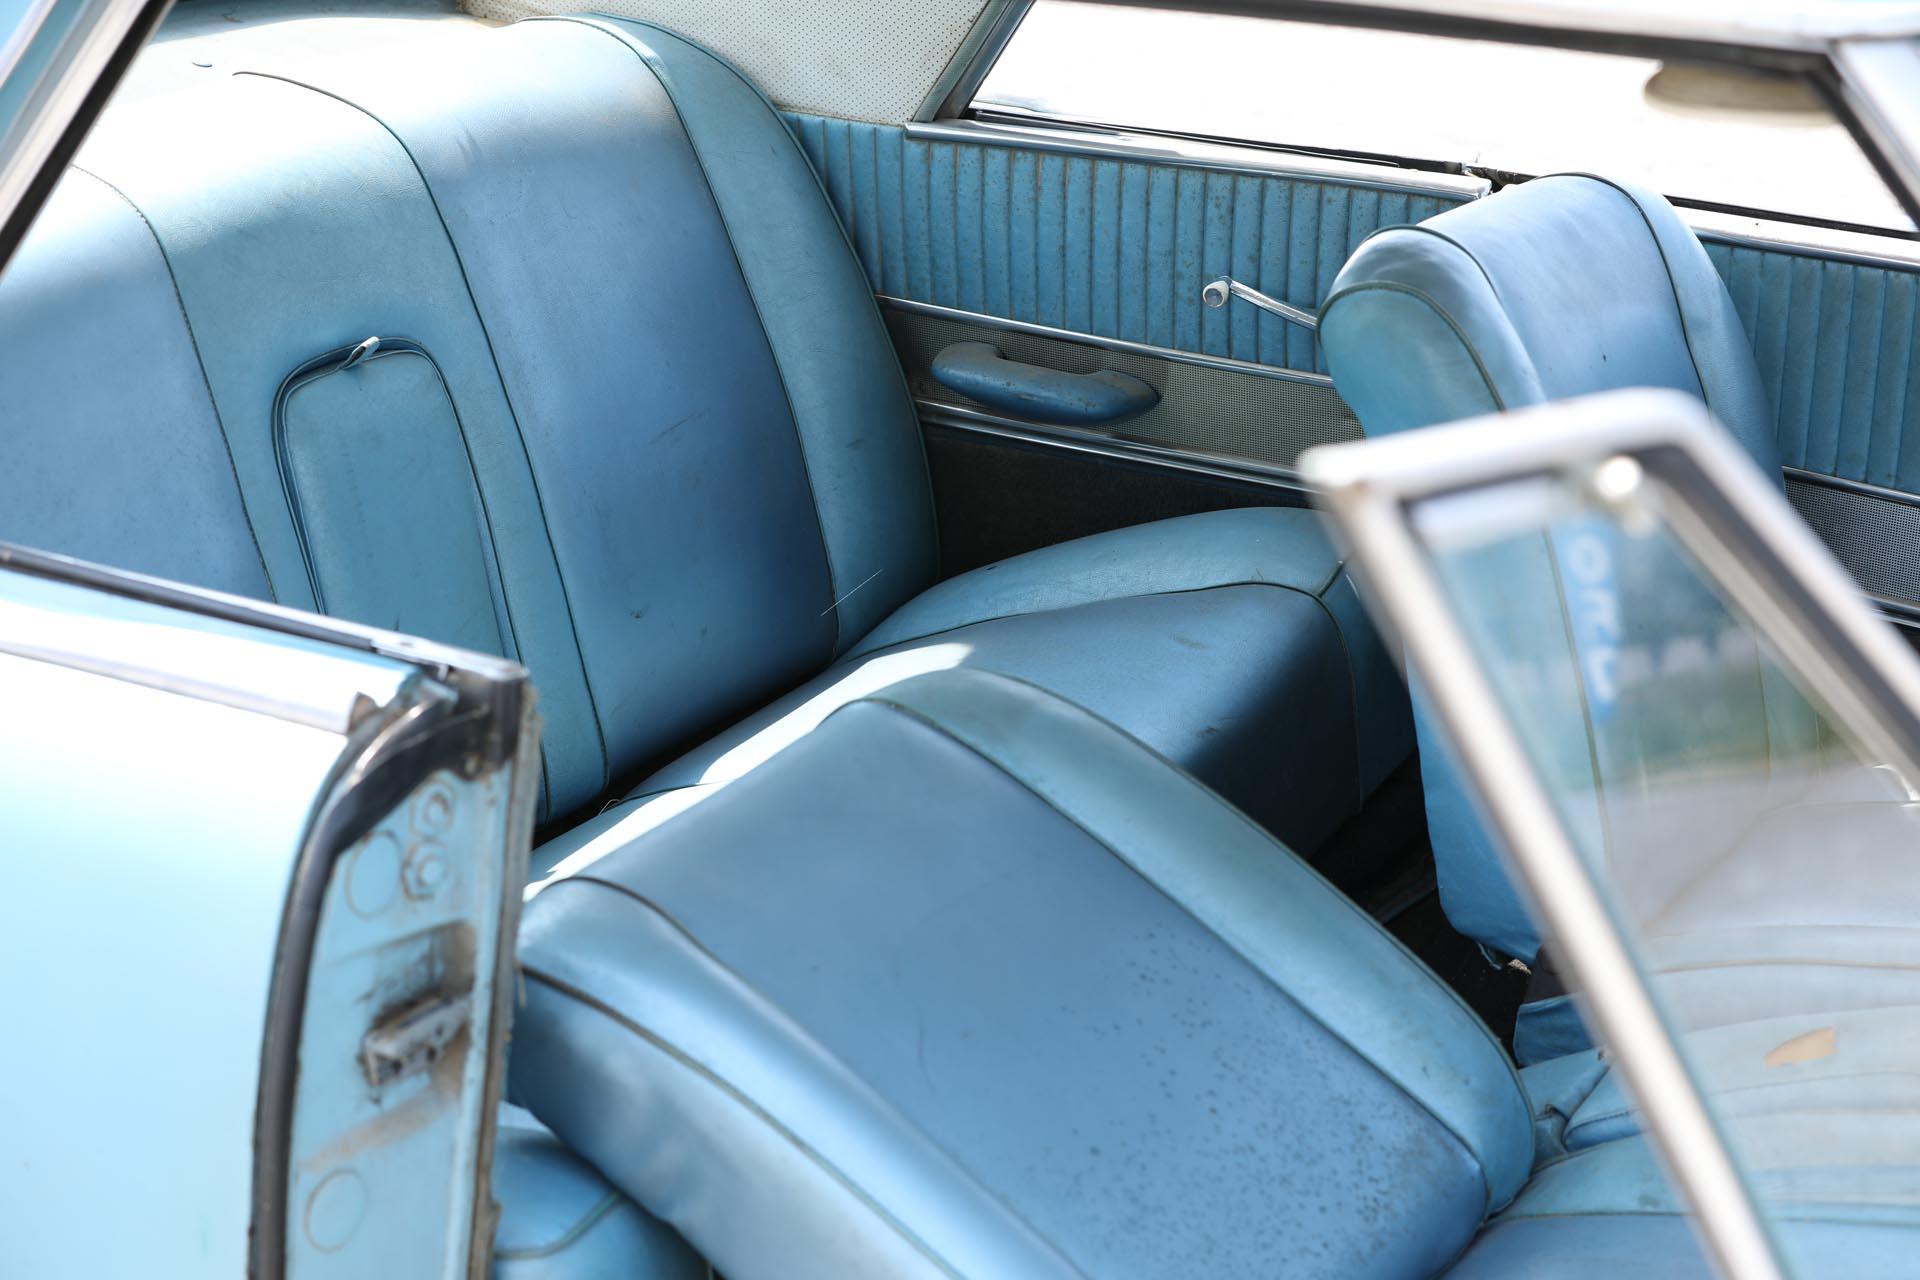 1962 Studebaker Gran Turismo Hawk Coupe